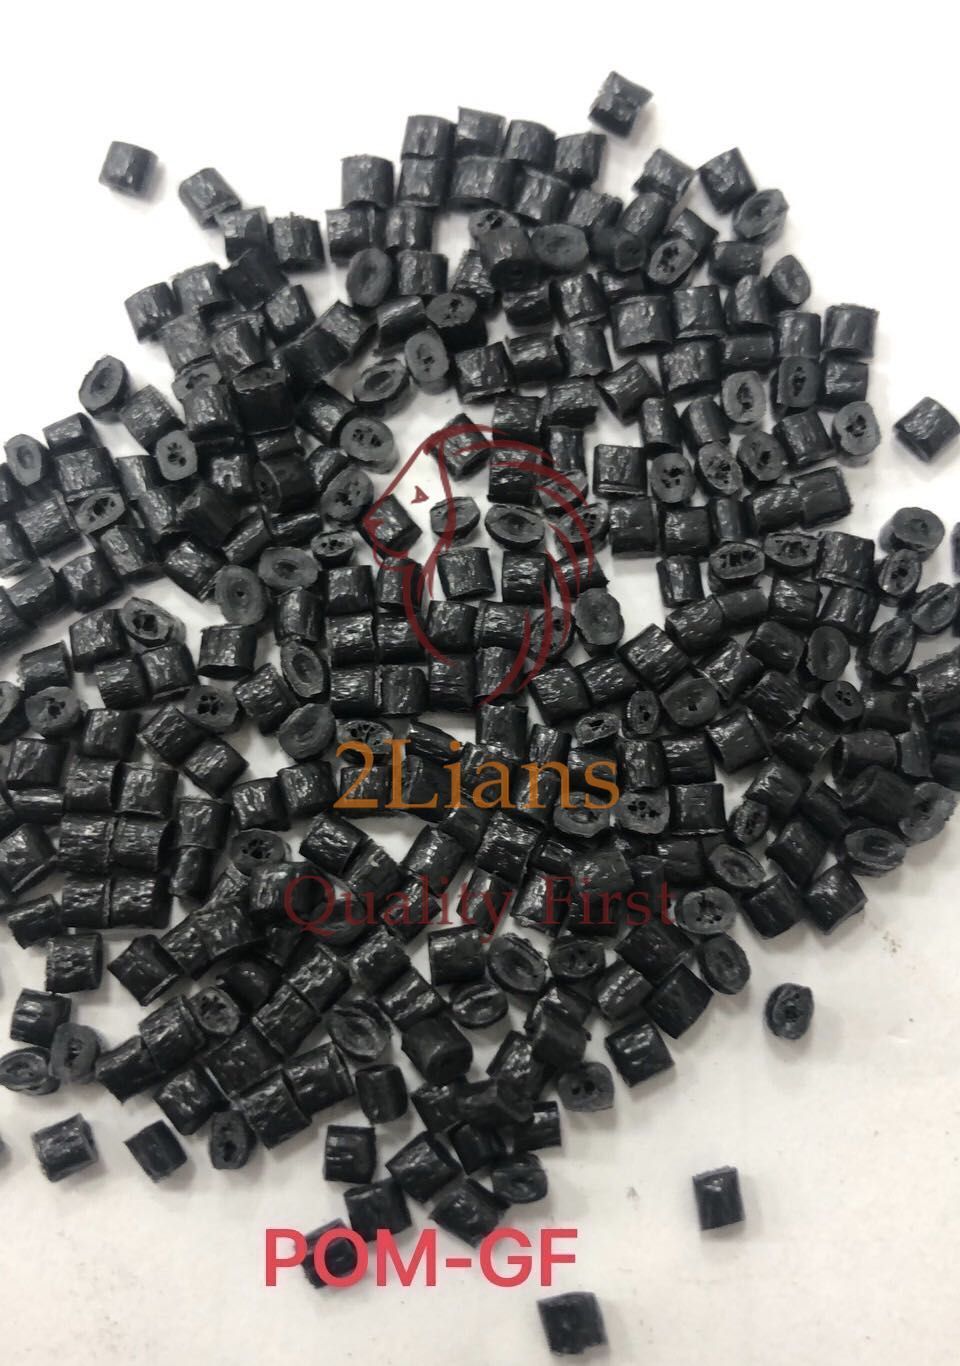 POM GF Re-pro Pellets Black Color Plastic Scrap Material For Sales